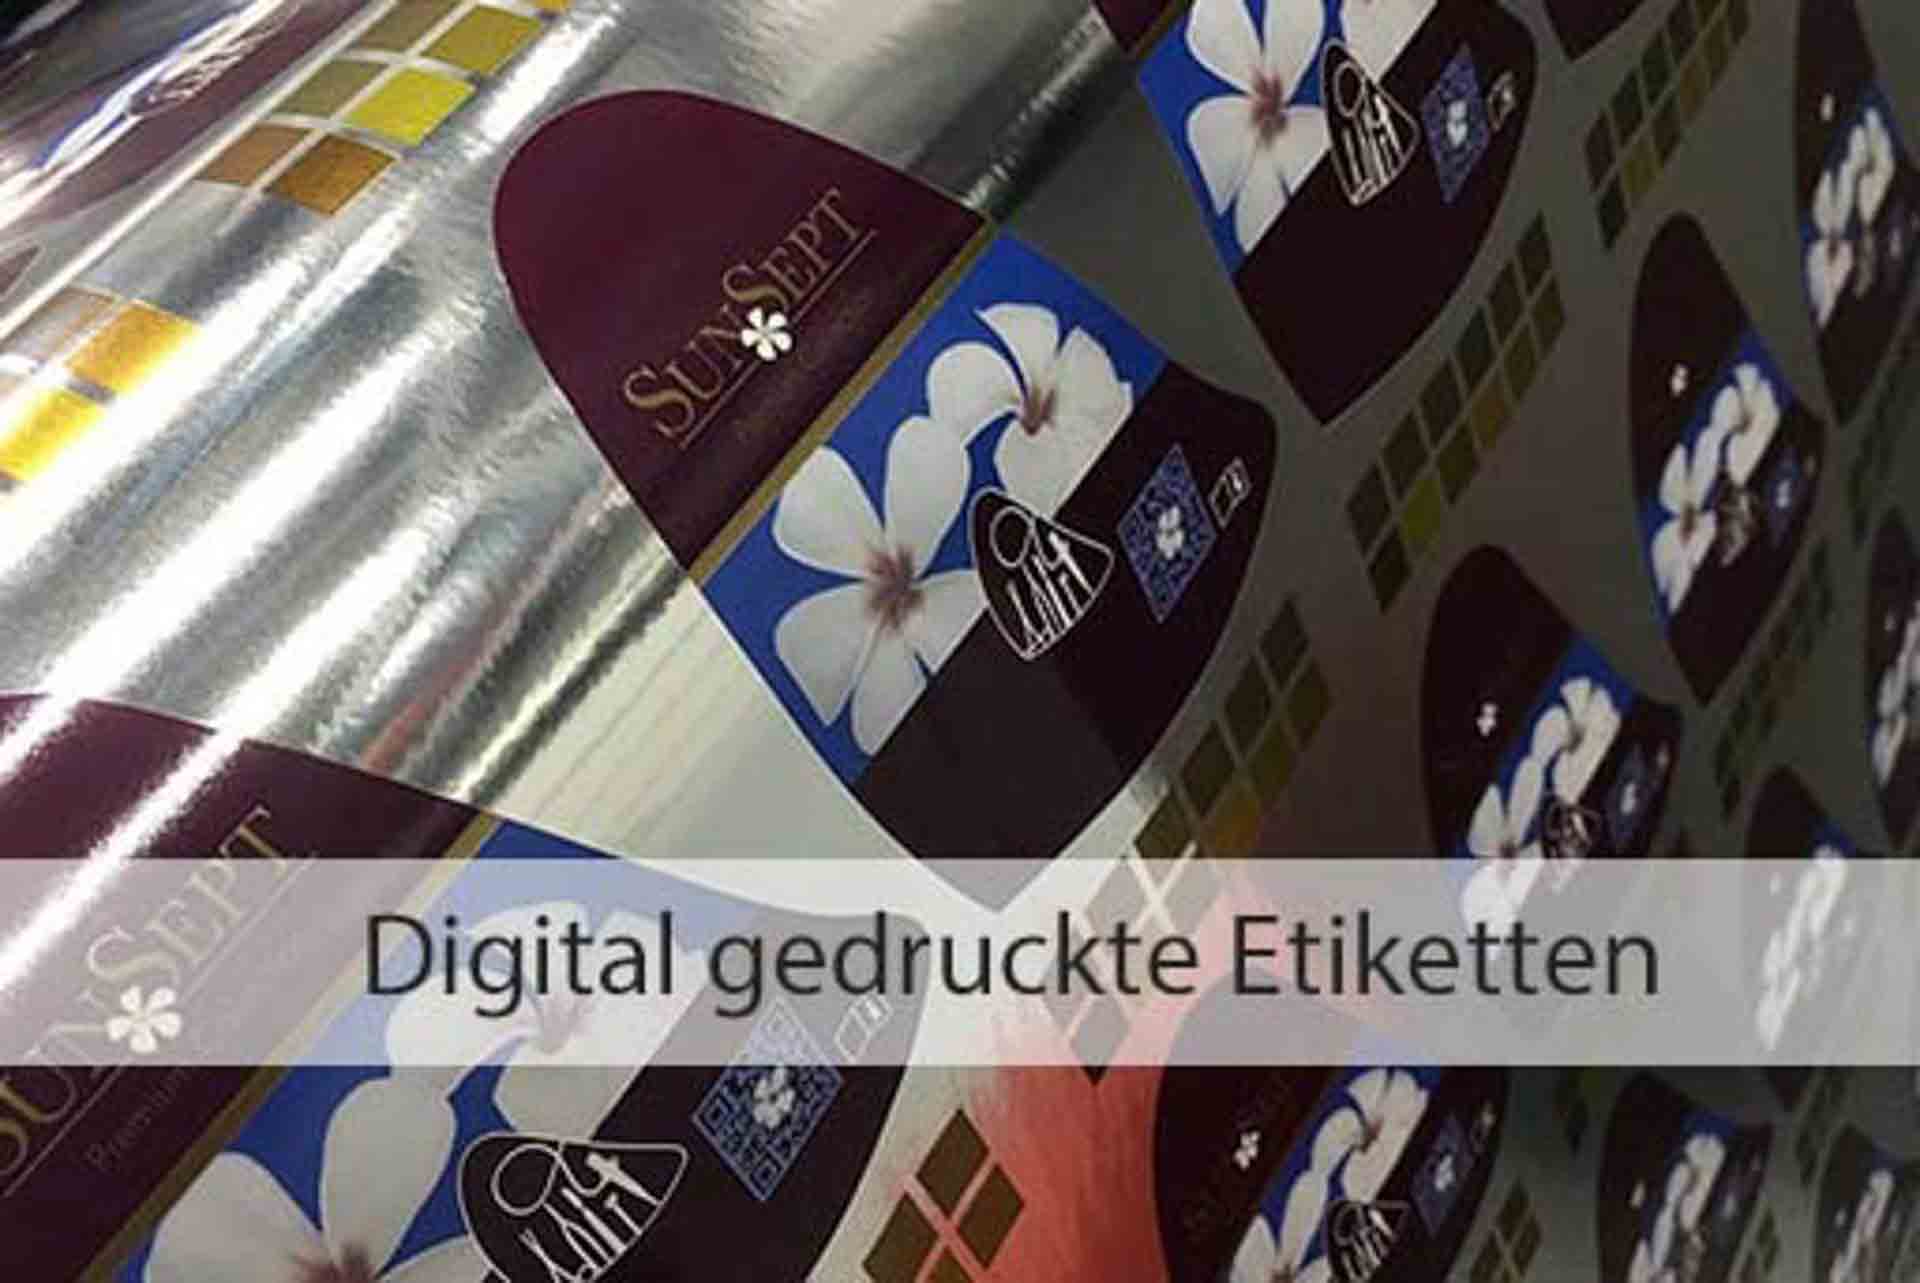 Digital gedruckte Etiketten | Papier-Schäfer GmbH & Co. KG